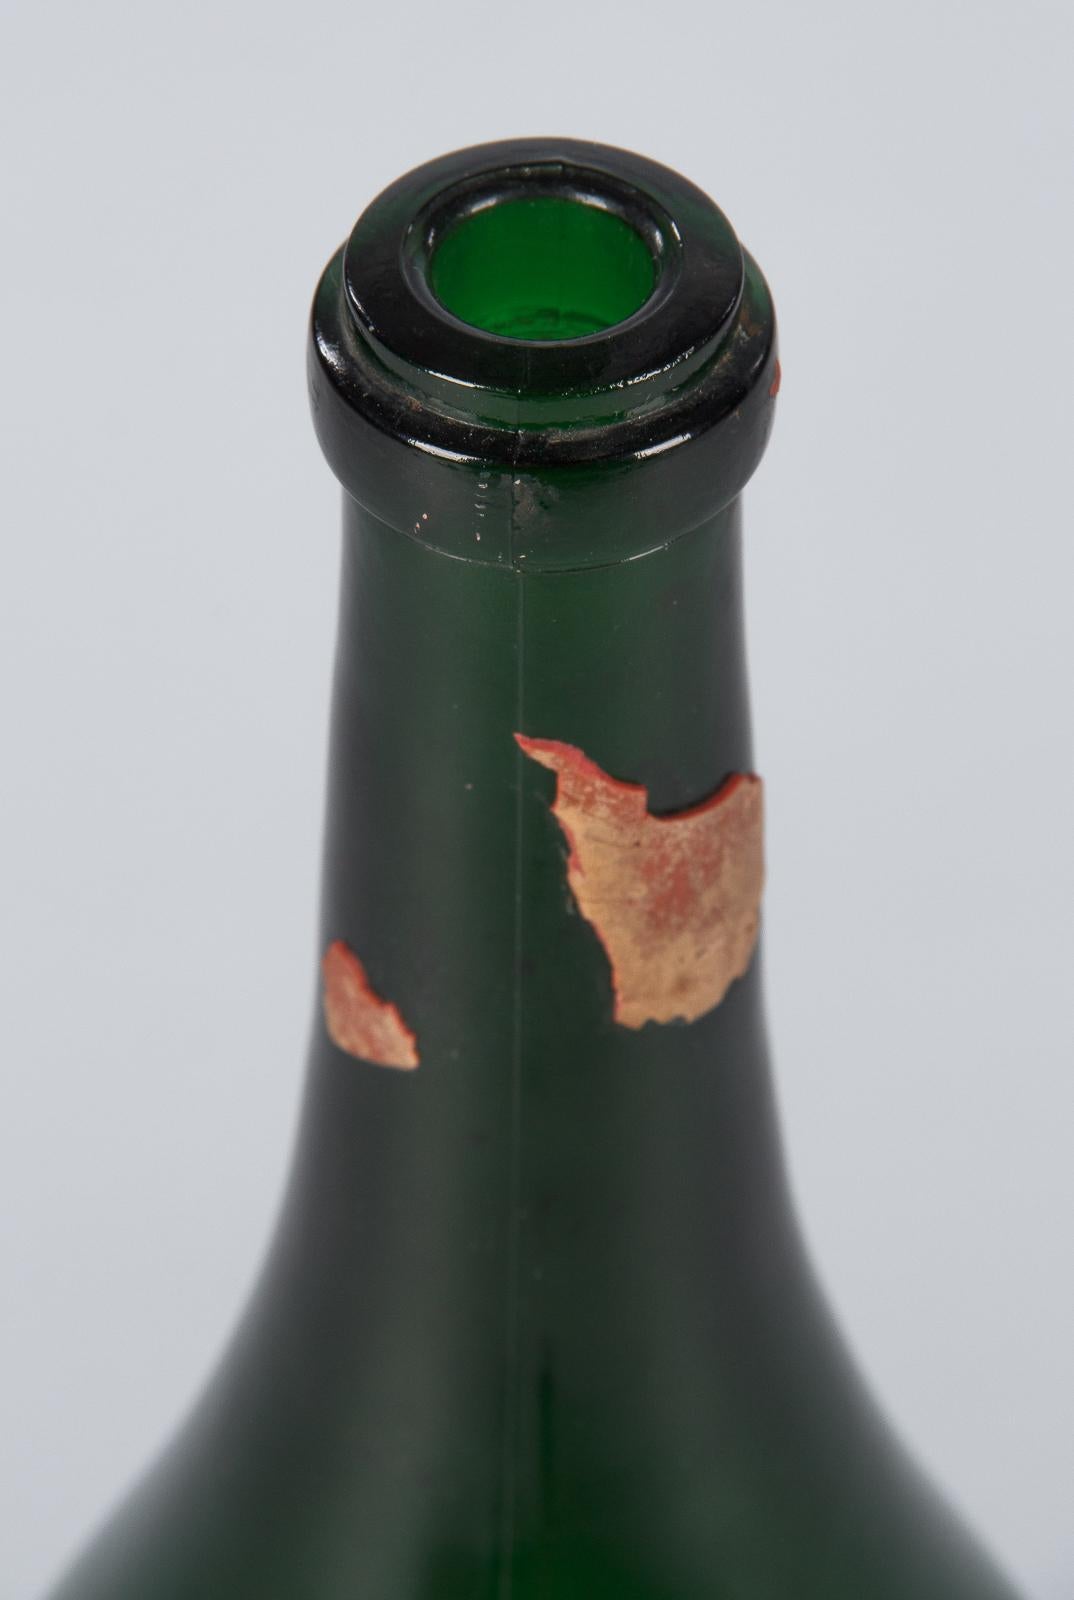 French France Cotes du Rhone Magnum Wine Bottle, 1991